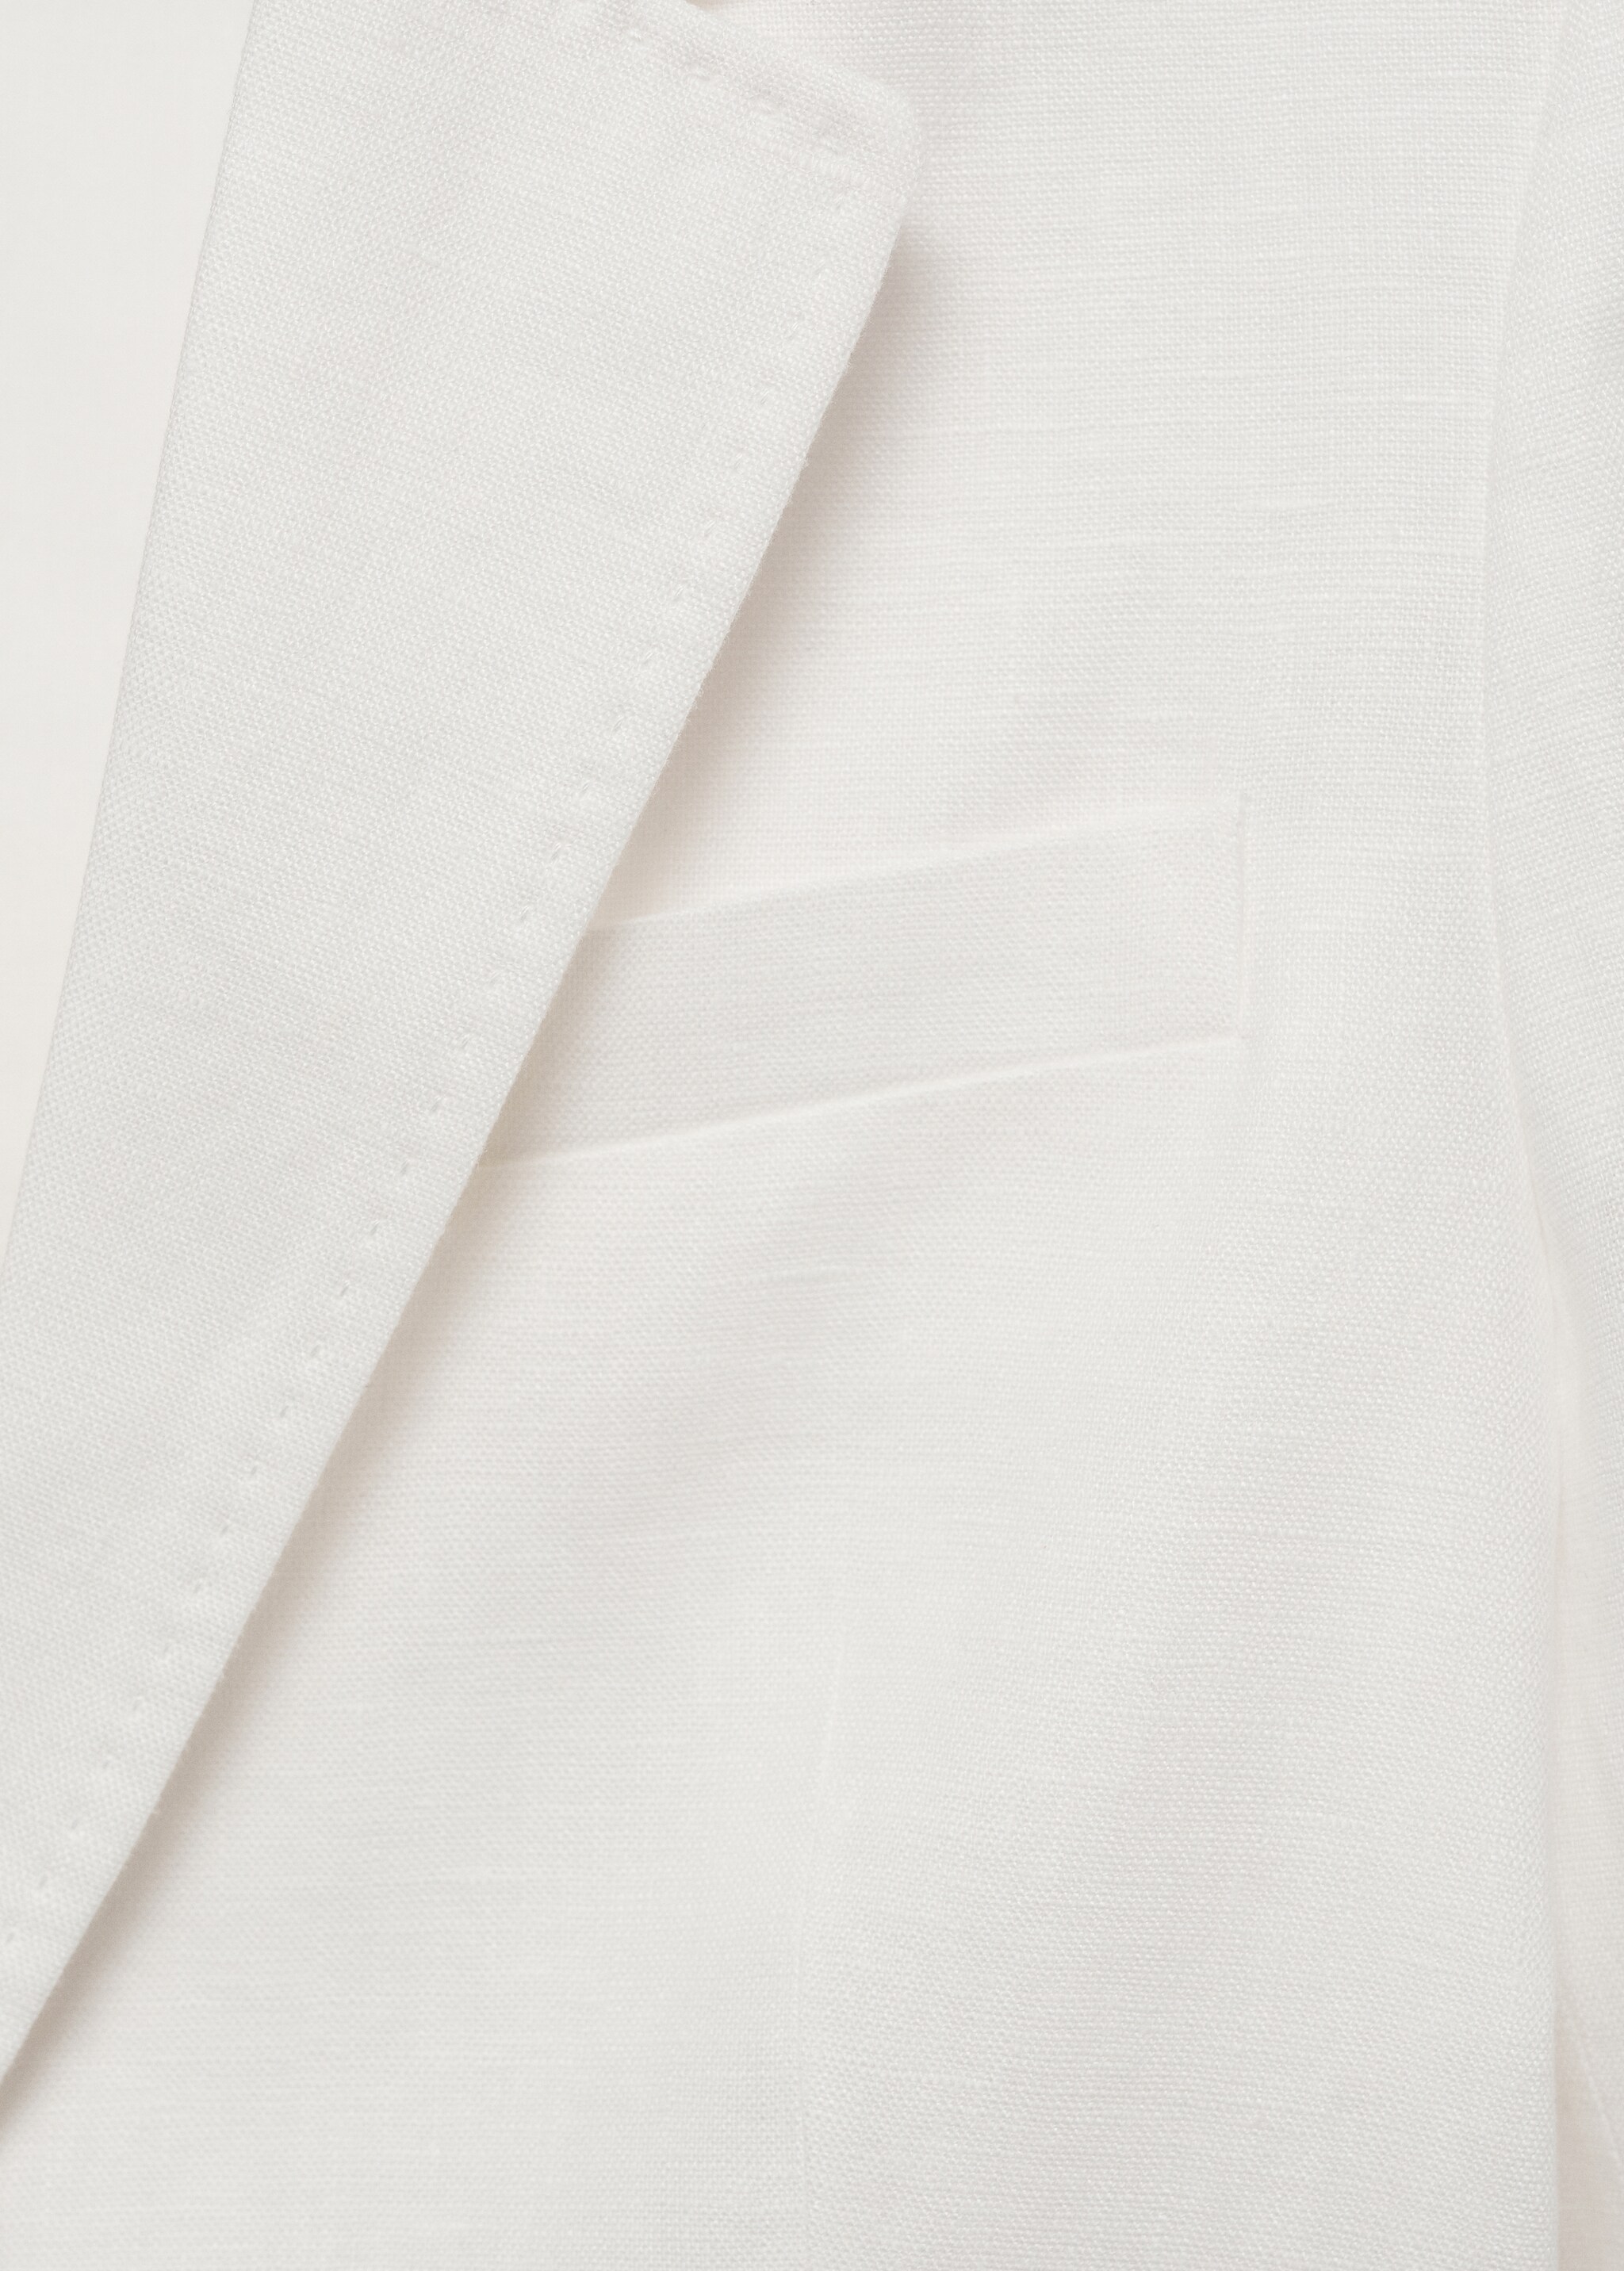 100% linen suit blazer - Details of the article 0